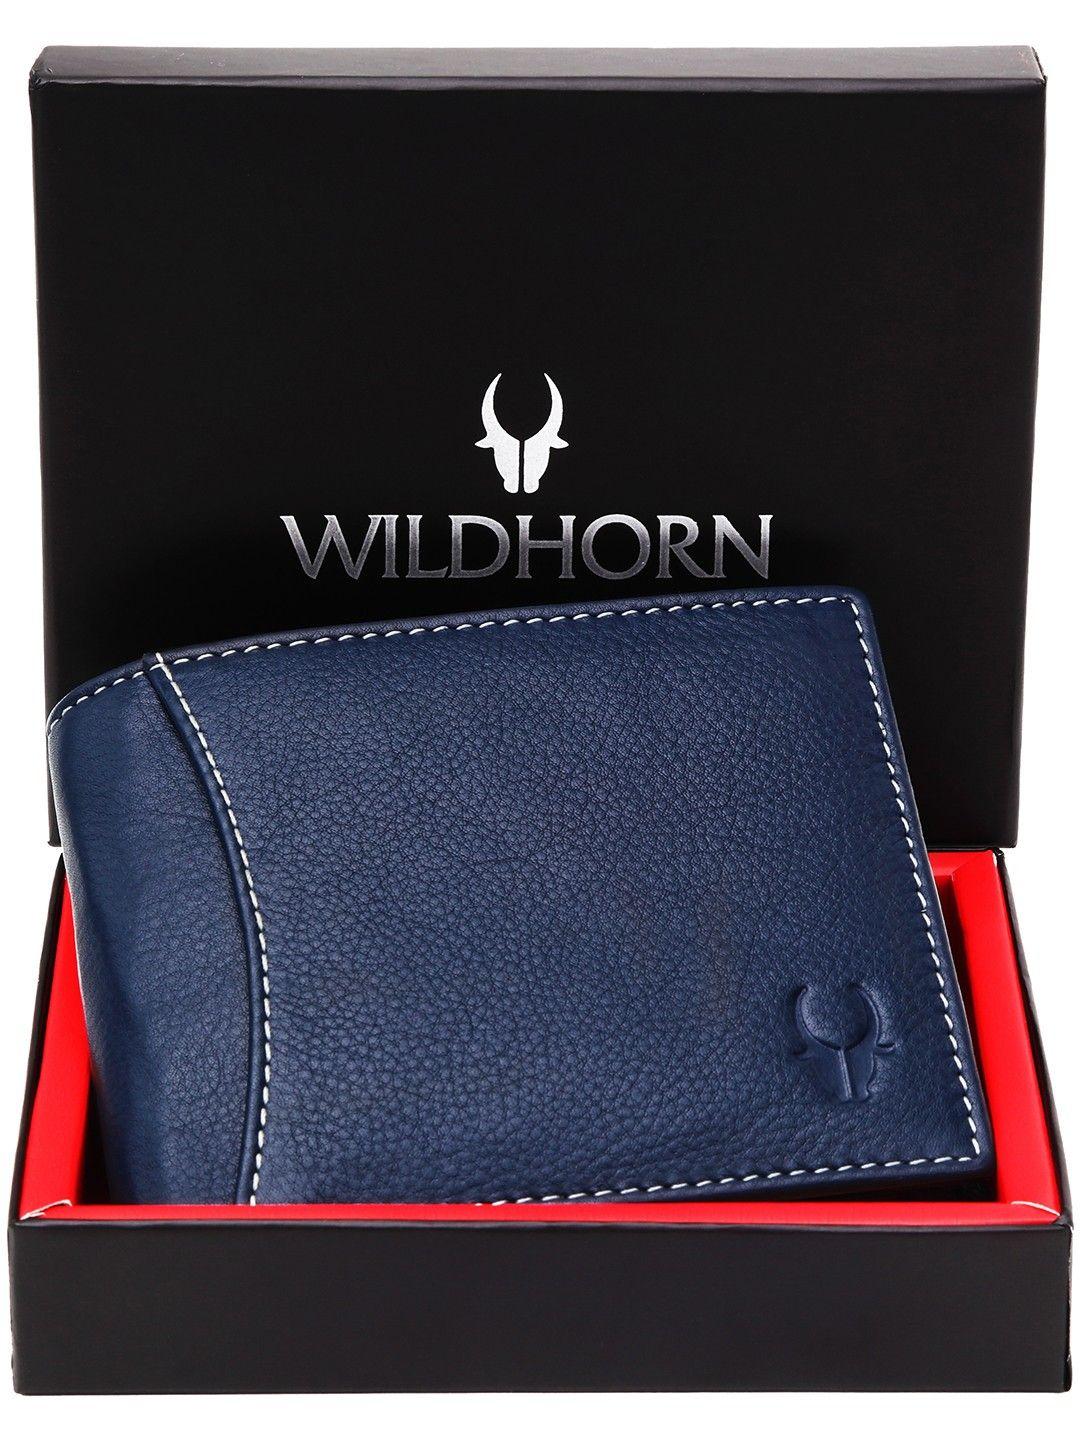 wildhorn men navy genuine leather wallet